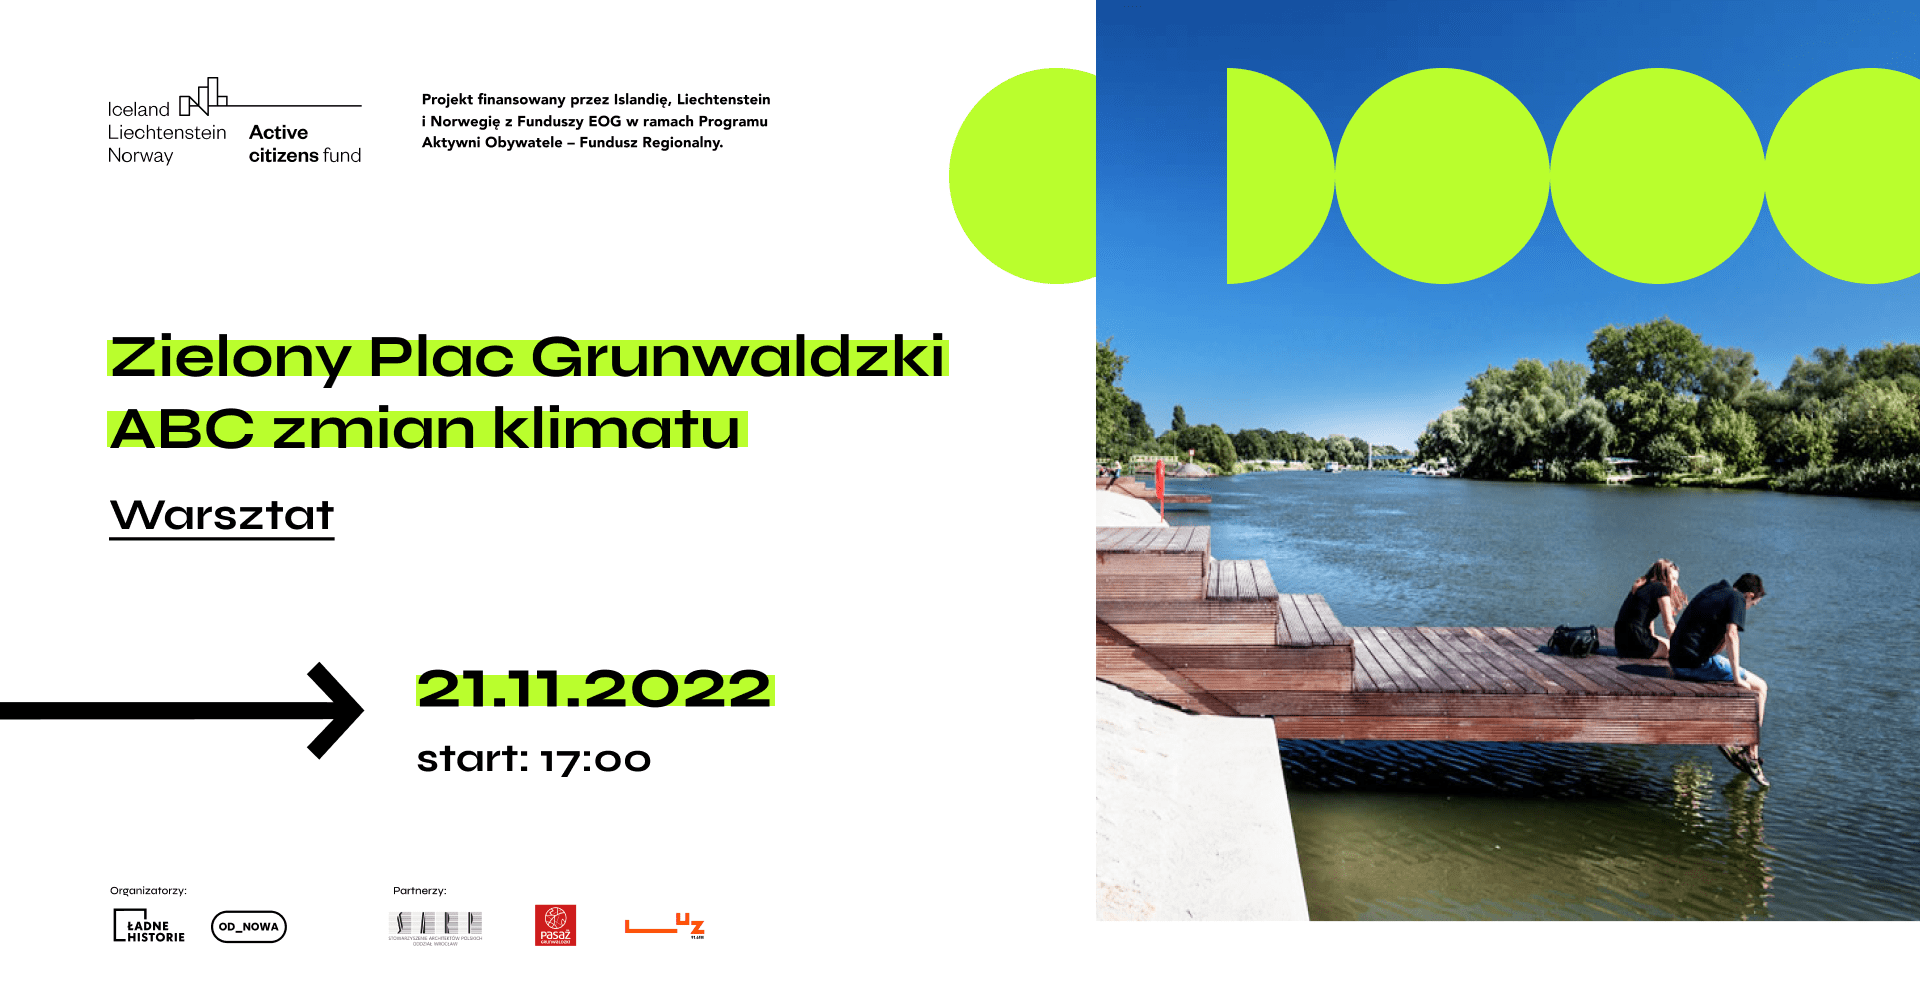 Po lewej stronie grafiki tekst: Zielony Plac Grunwaldzki: ABC zmian klimatu - warsztat. 21.11.2022 start: 17:00. Po prawej stronie zdjęcie dwóch osób siedzących na pomoście nad rzeką.